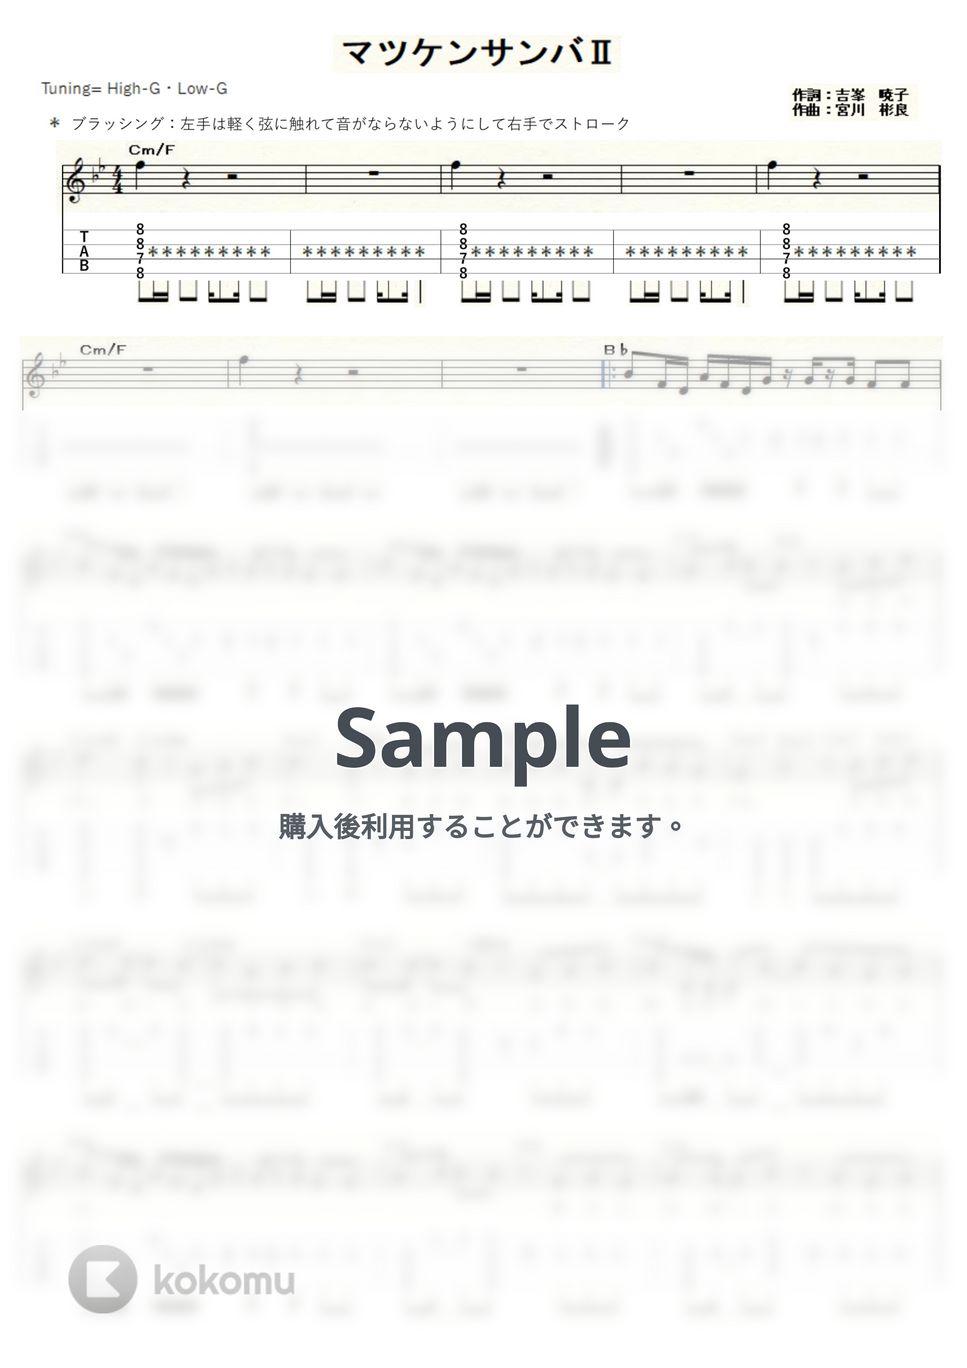 松平健 - マツケンサンバⅡ (ｳｸﾚﾚｿﾛ / High-G・Low-G / 上級) by ukulelepapa